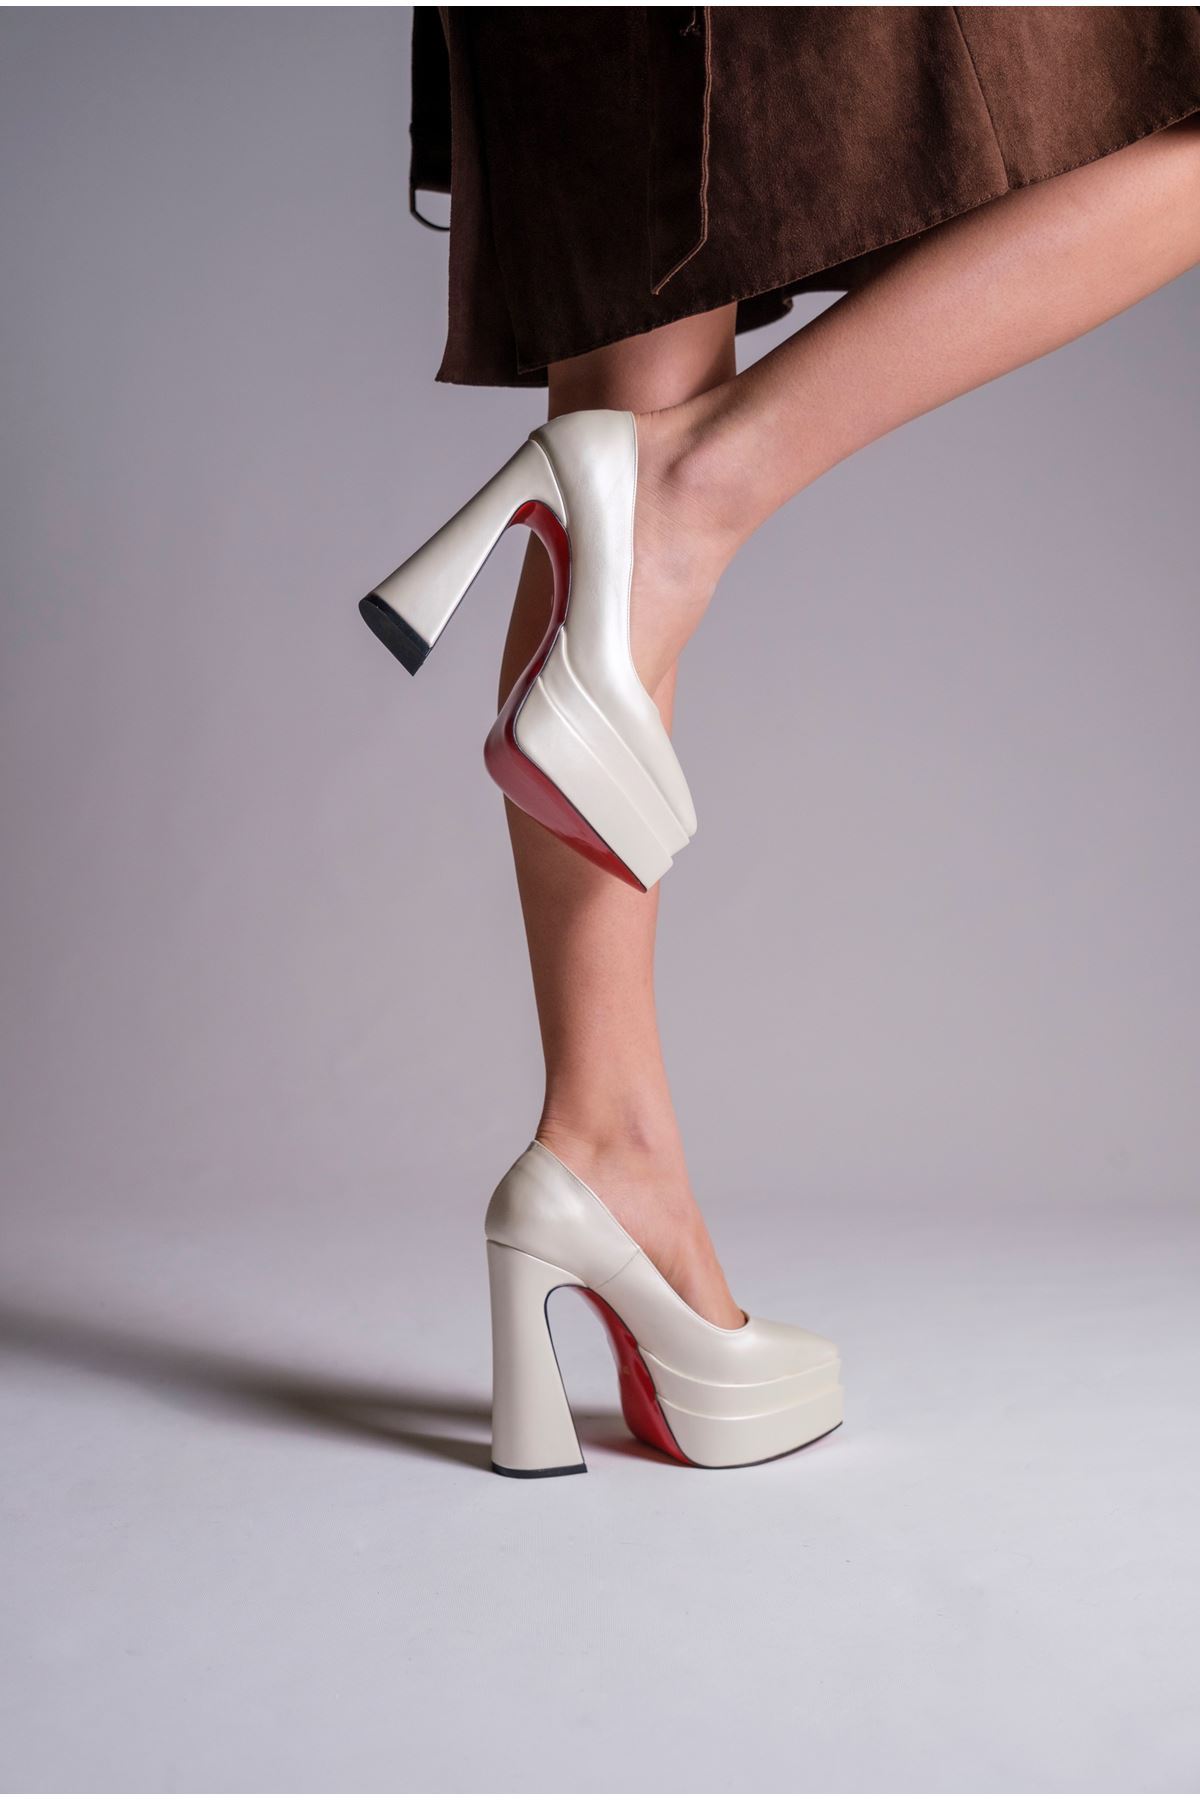 Sedef Cilt Çift  Platform Özel Tasarım Kadın Ayakkabı Rigel